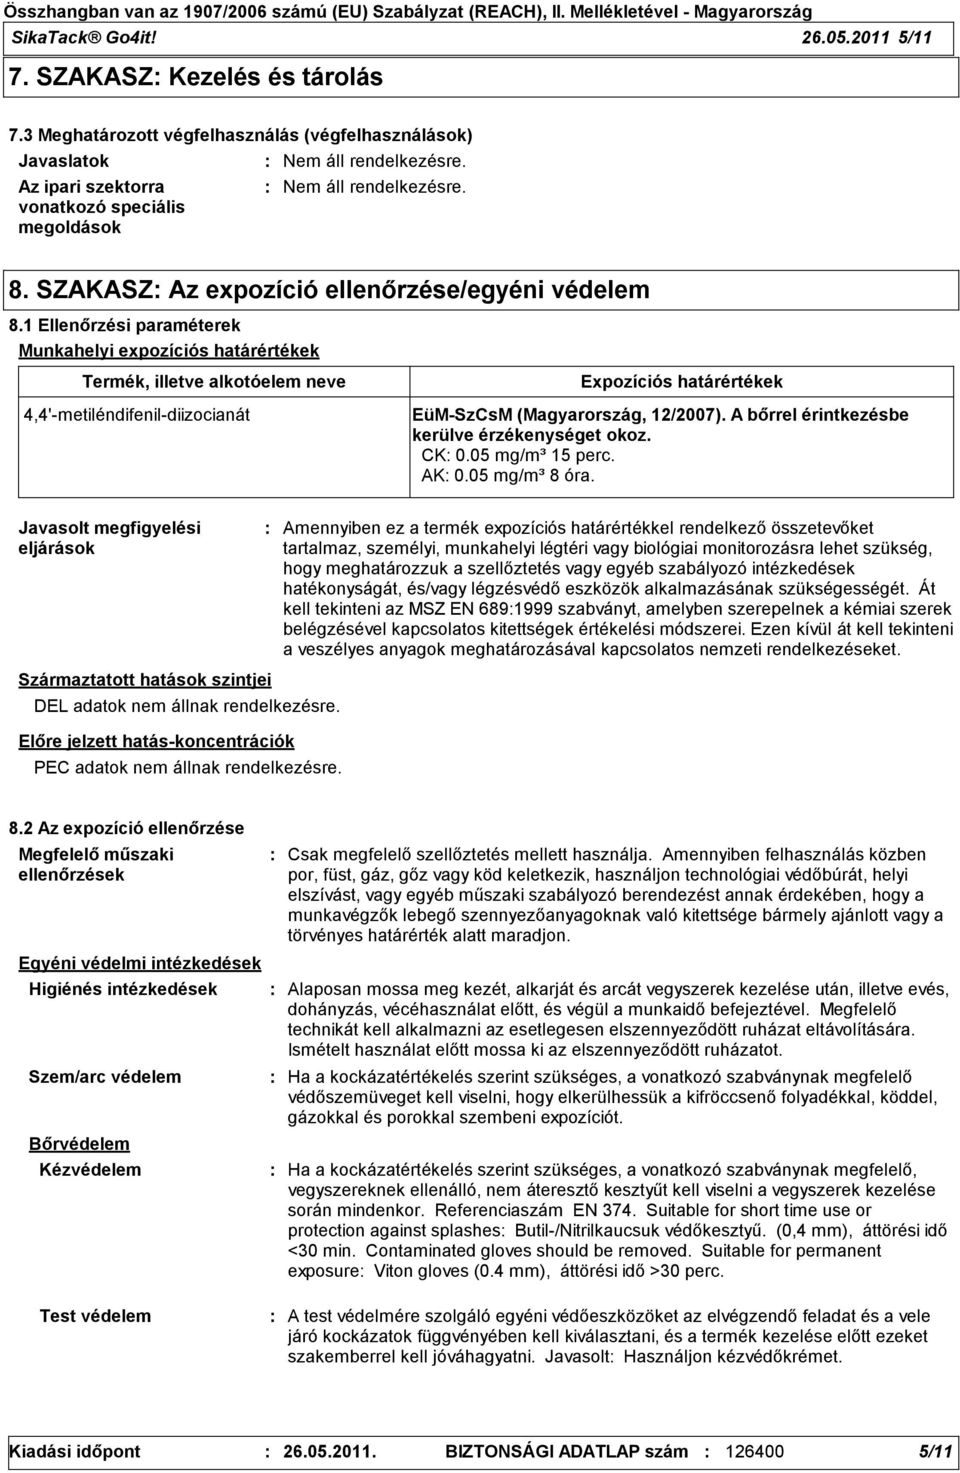 1 Ellenőrzési paraméterek Munkahelyi expozíciós határértékek Termék, illetve alkotóelem neve 4,4'metiléndifenildiizocianát Expozíciós határértékek EüMSzCsM (Magyarország, 12/2007).